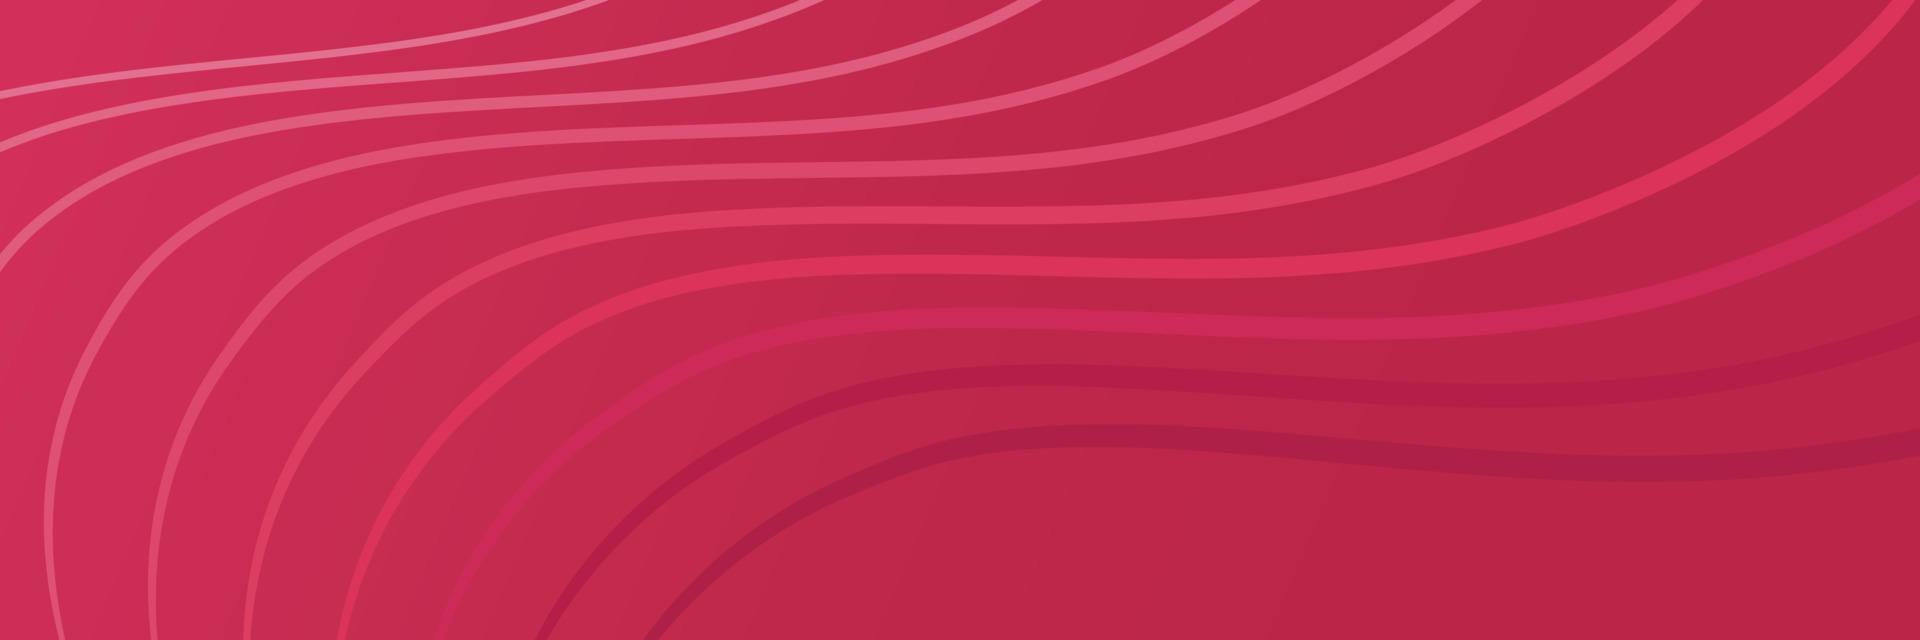 fond abstrait. pantone 2023 couleur viva magenta. bannière web rectangulaire horizontale rose vif. illustration de dégradé de vecteur